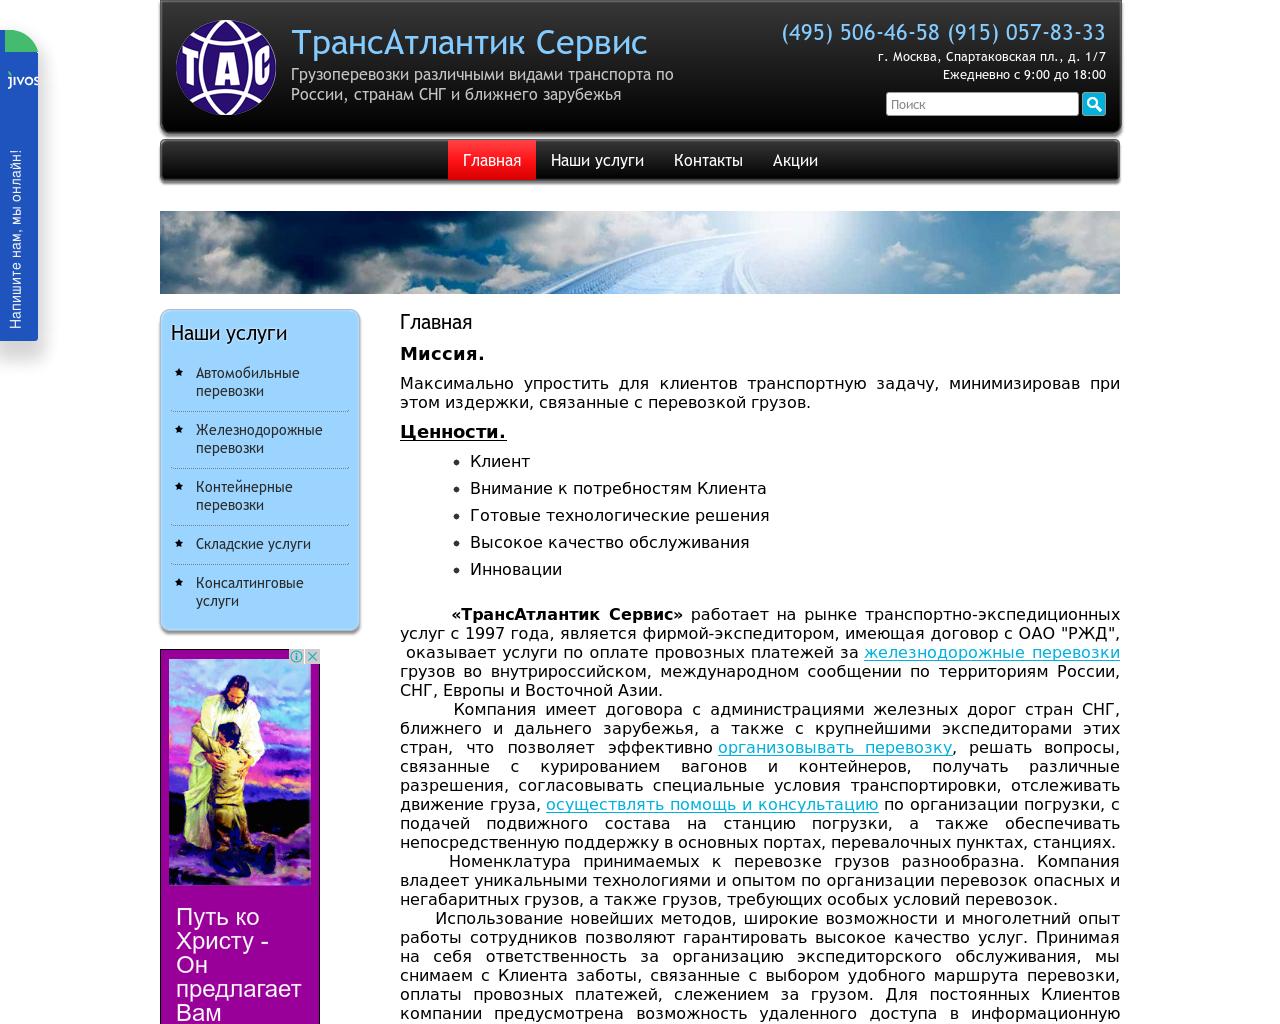 Изображение сайта trans-atlantic.ru в разрешении 1280x1024